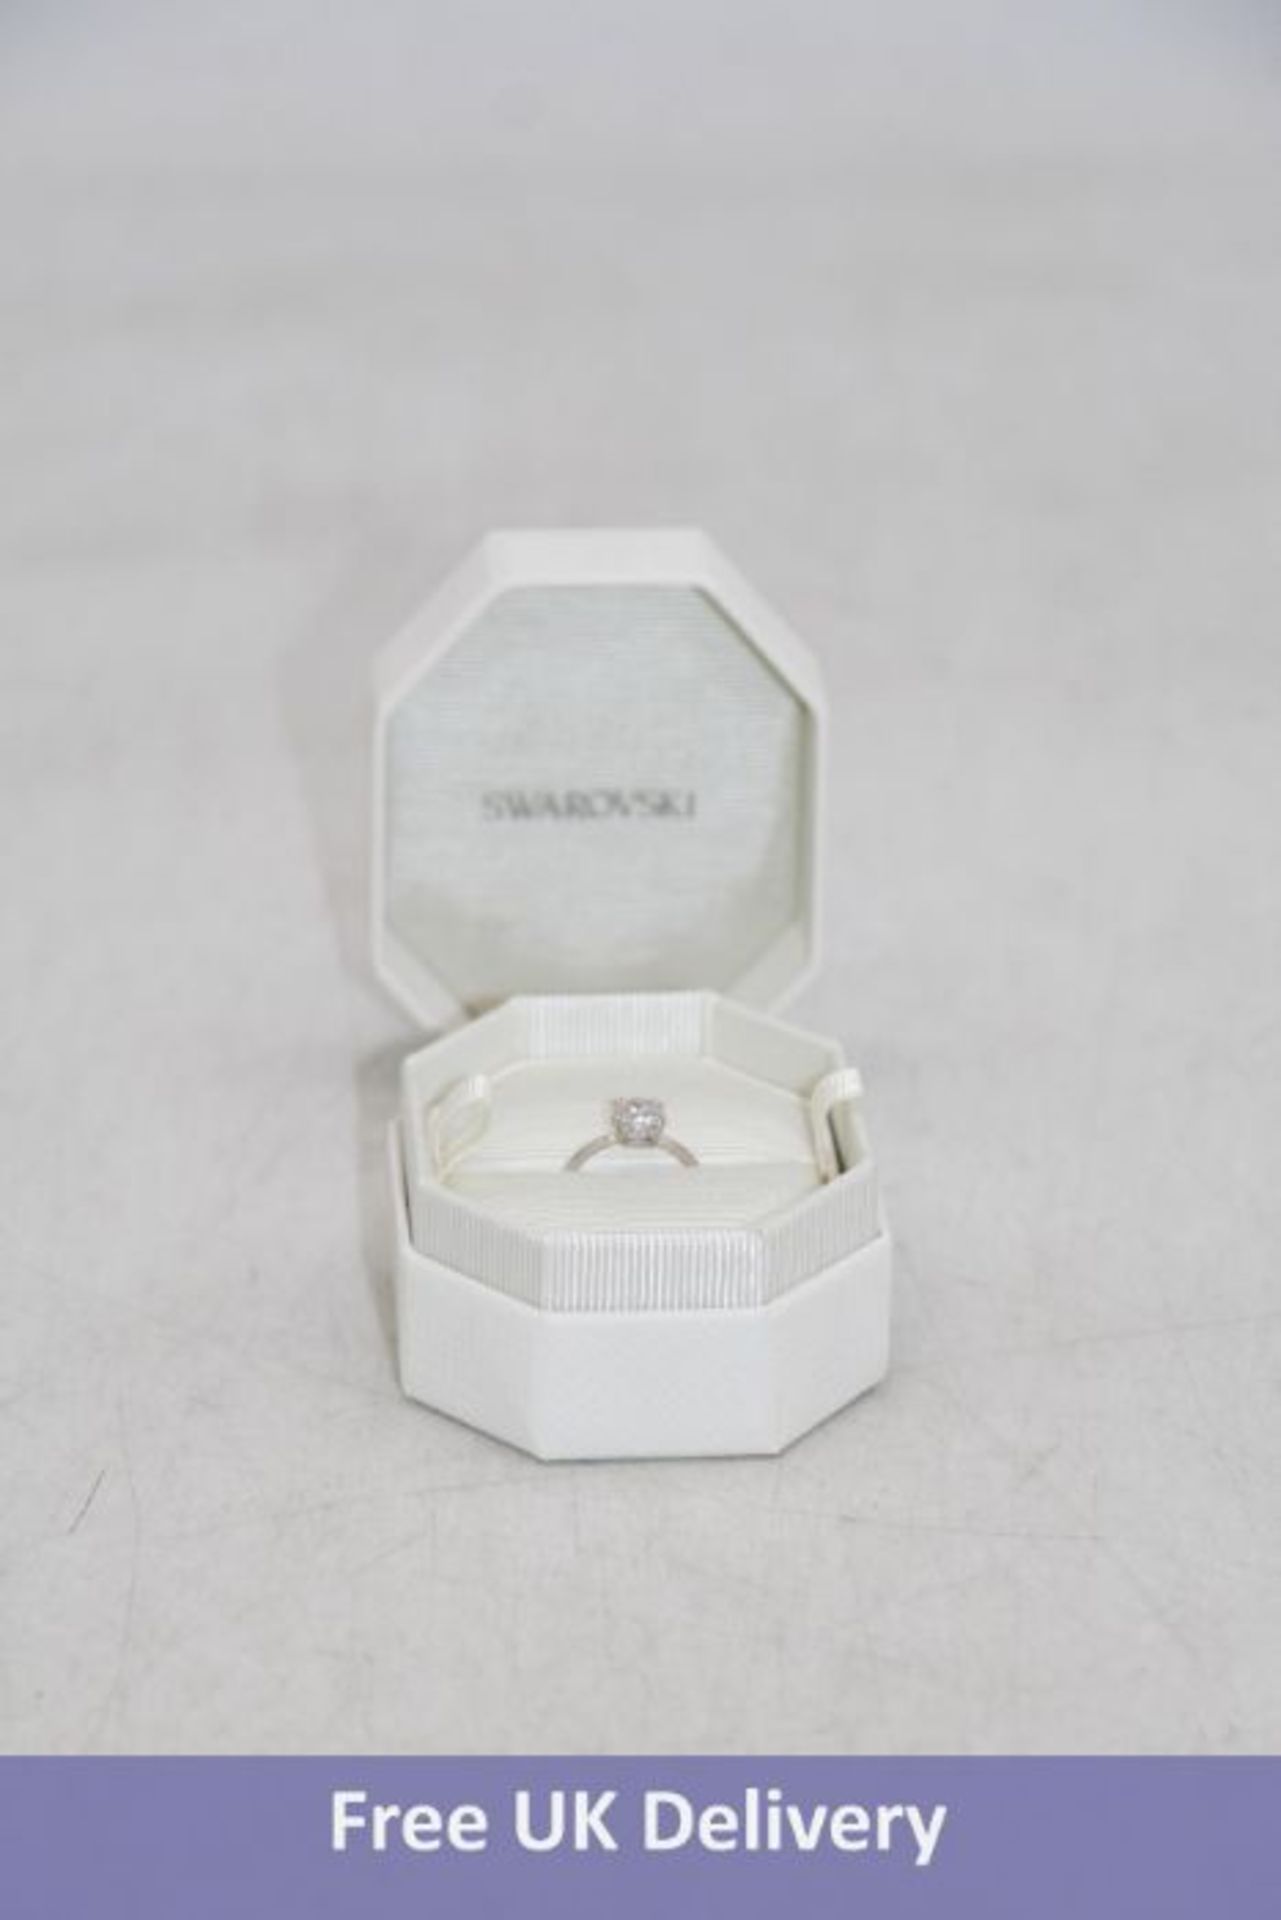 Swarovski Prstan Ring, Size 55, 5638529